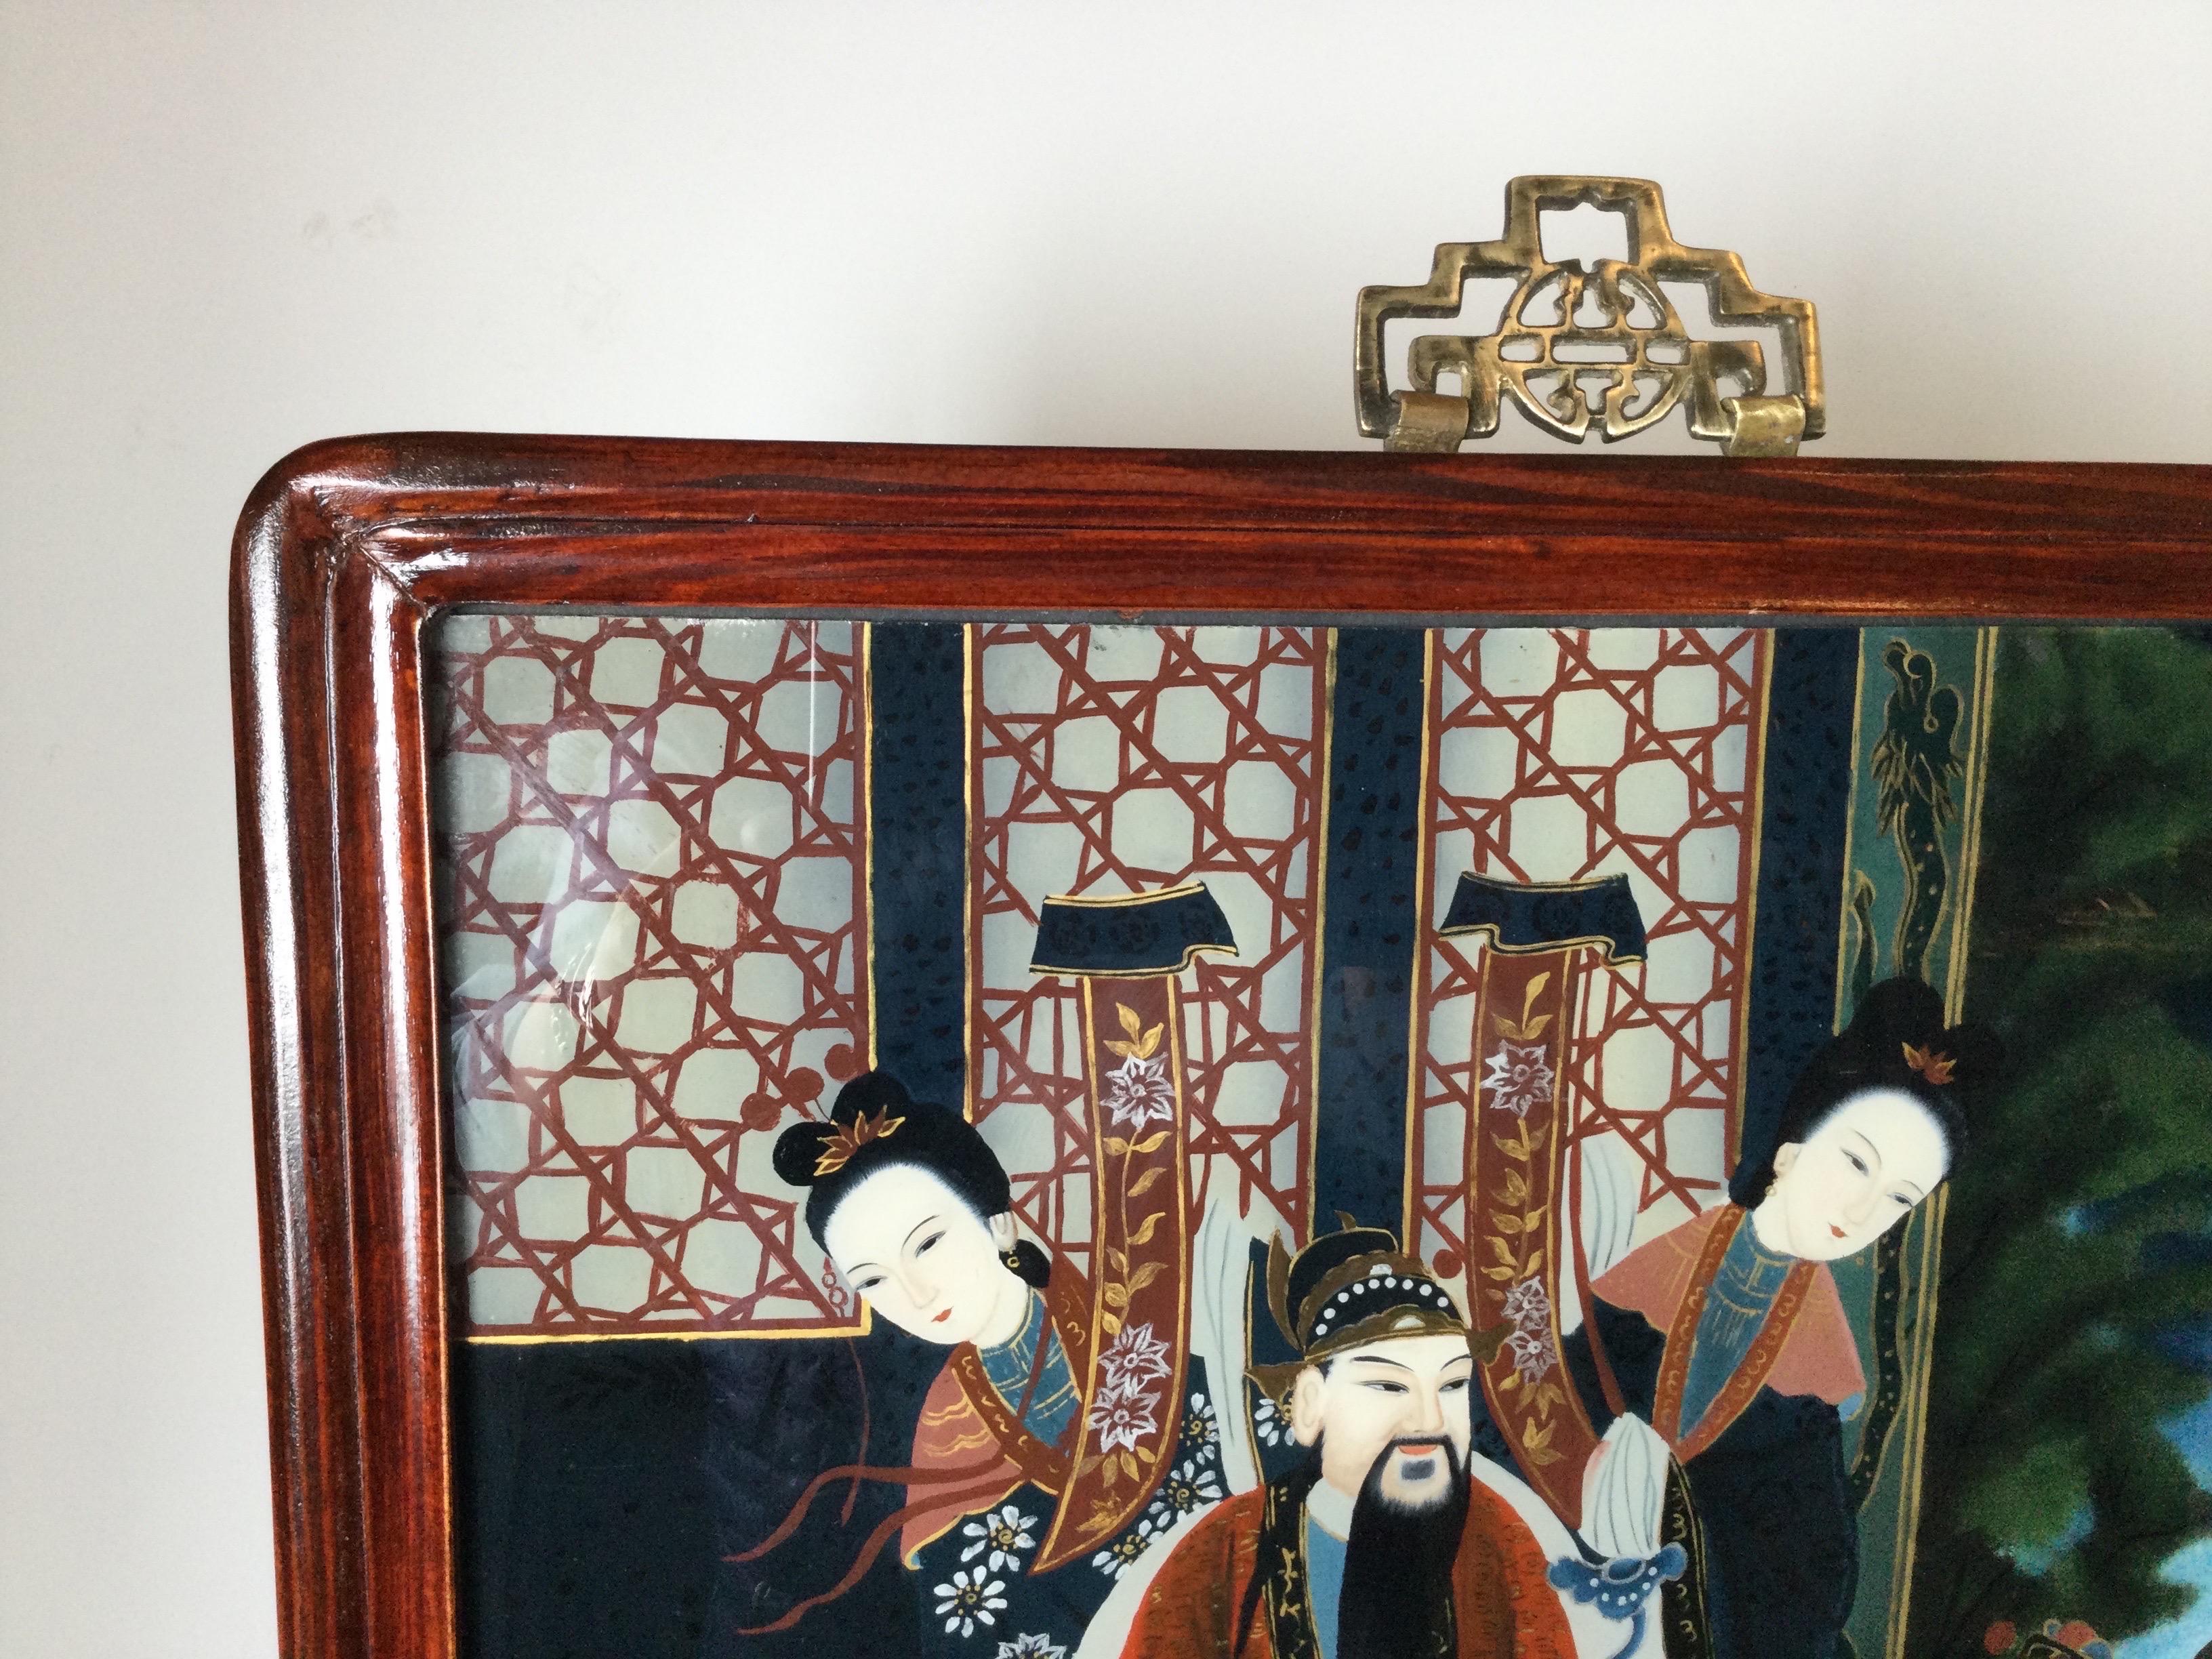 Une paire de groupes de femmes et d'hommes nobles japonais magnifiquement peints. Les tableaux sont peints à l'envers sur verre et encadrés dans des cadres en bois Hung-mu de style asiatique avec des crochets en laiton moulé sur le dessus.